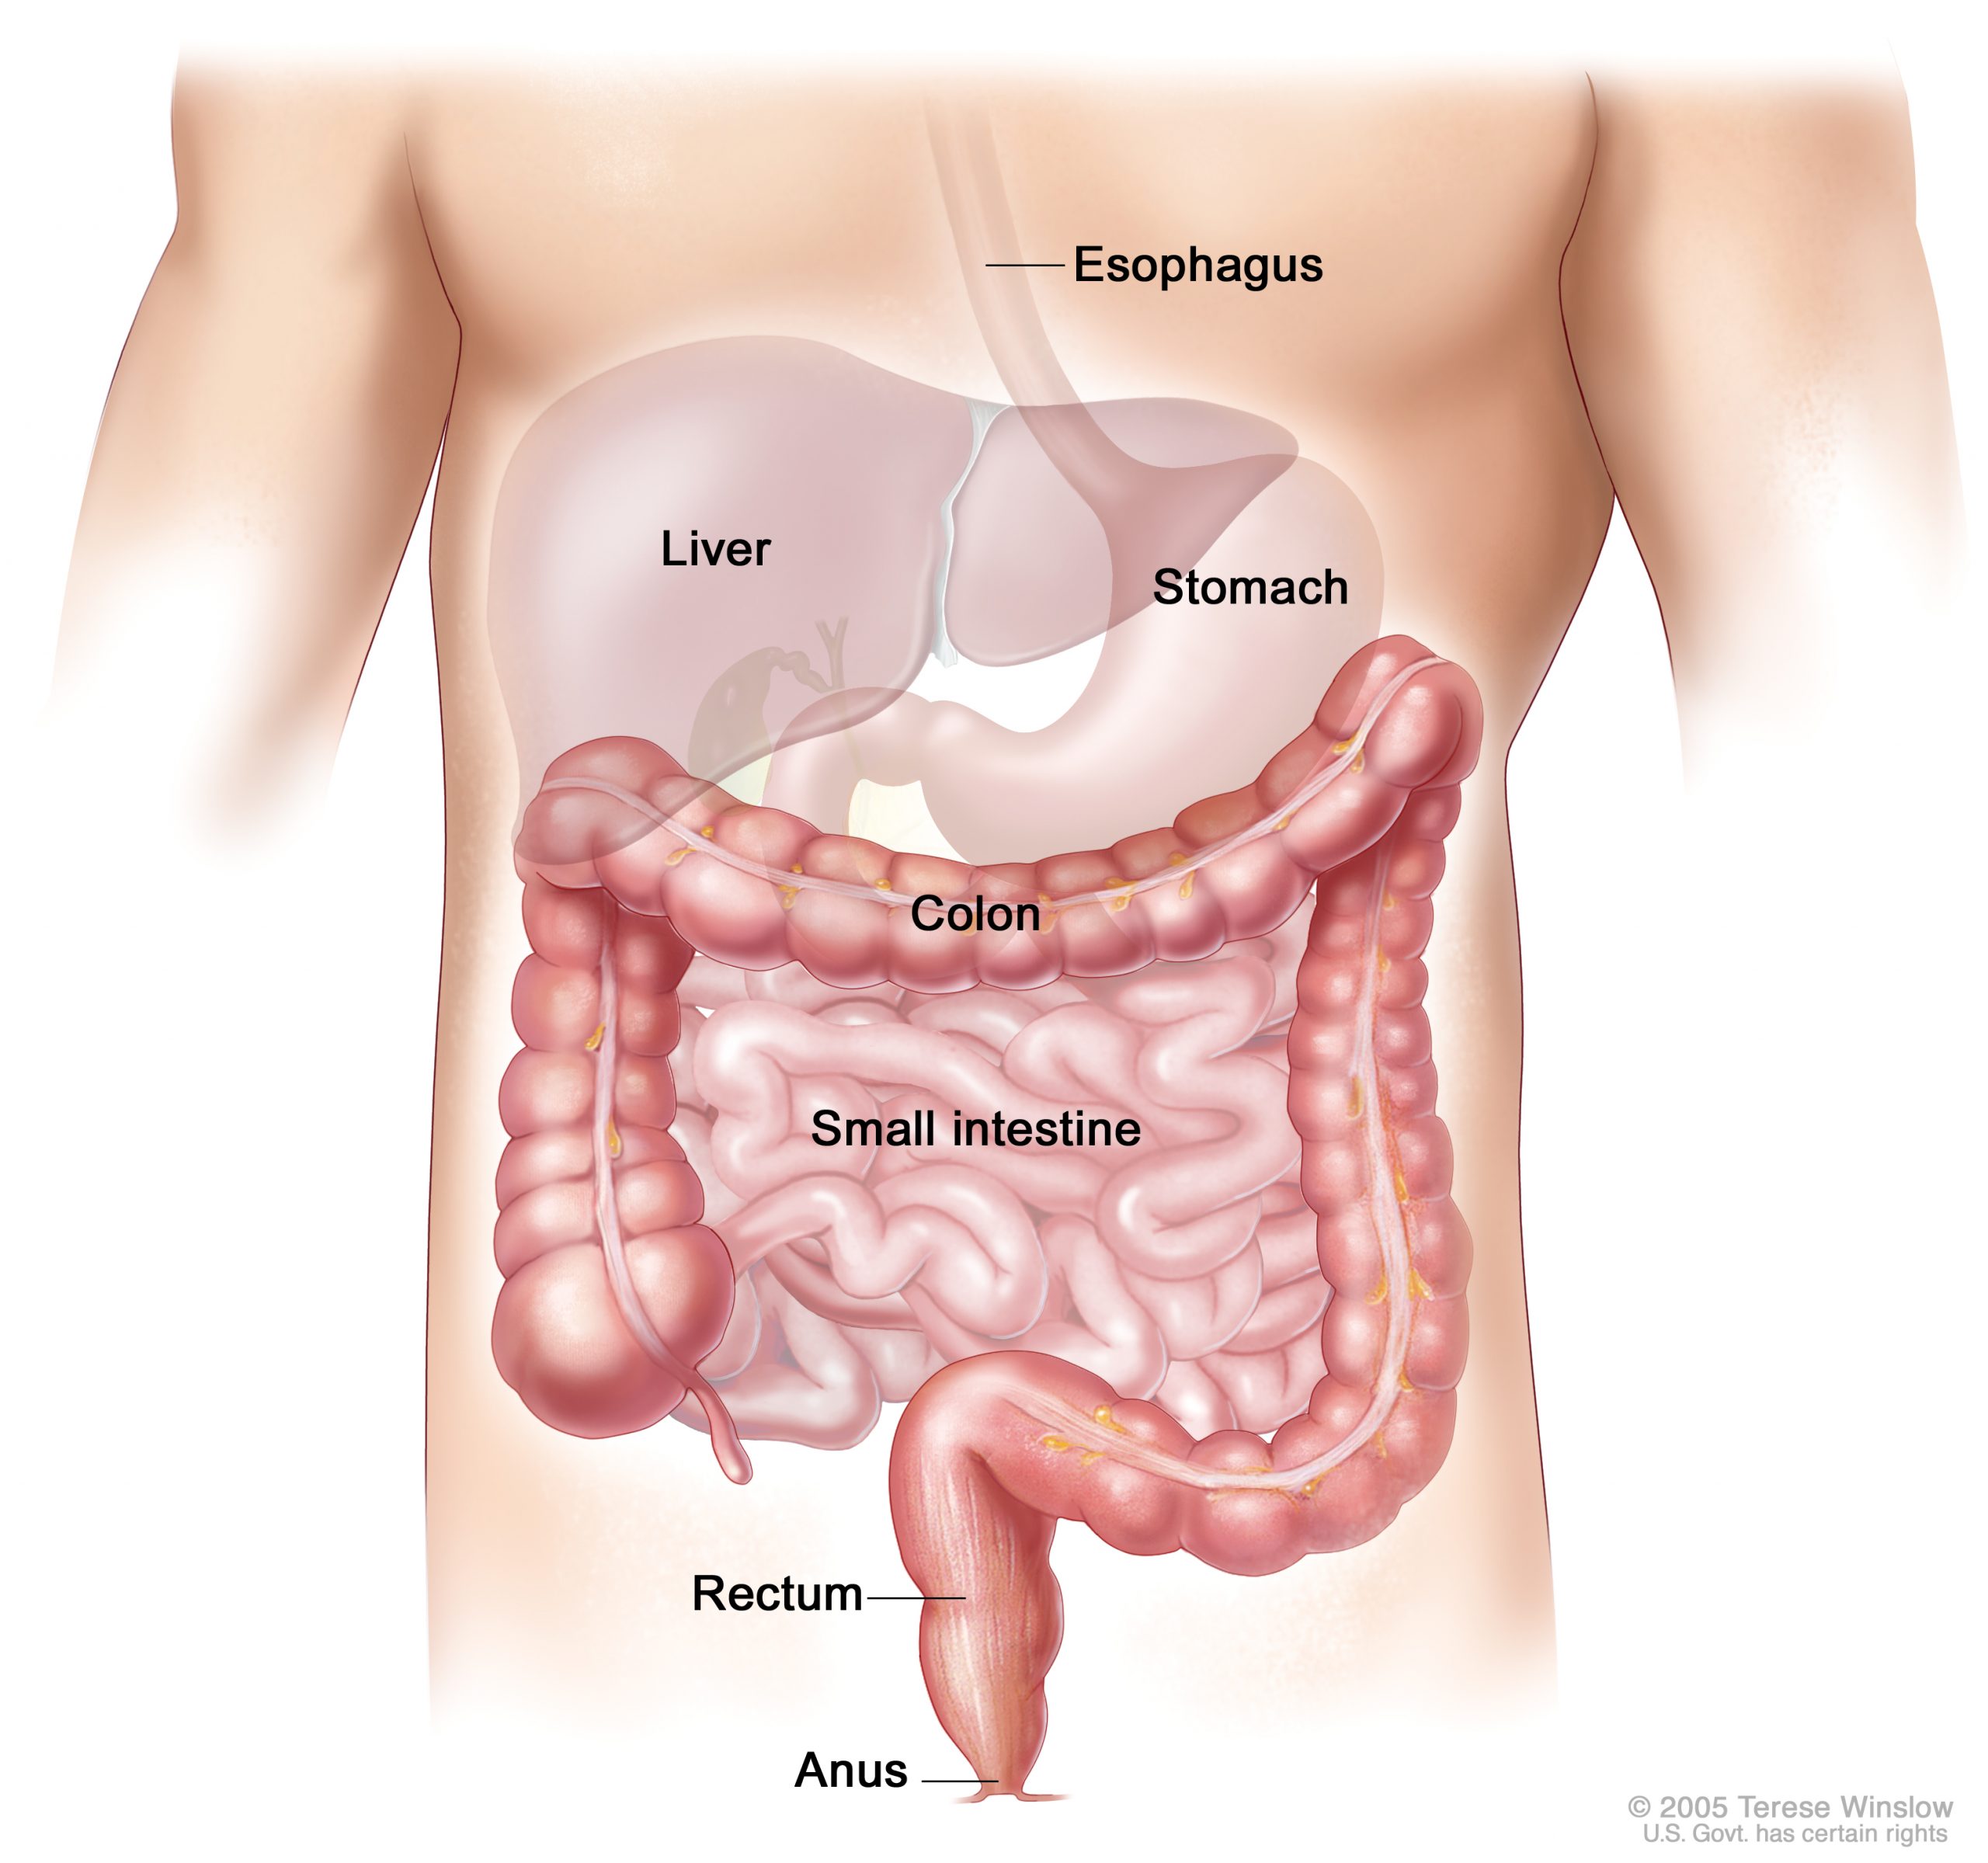 Sindromul colonului iritabil - cauze, simptome și recomandări